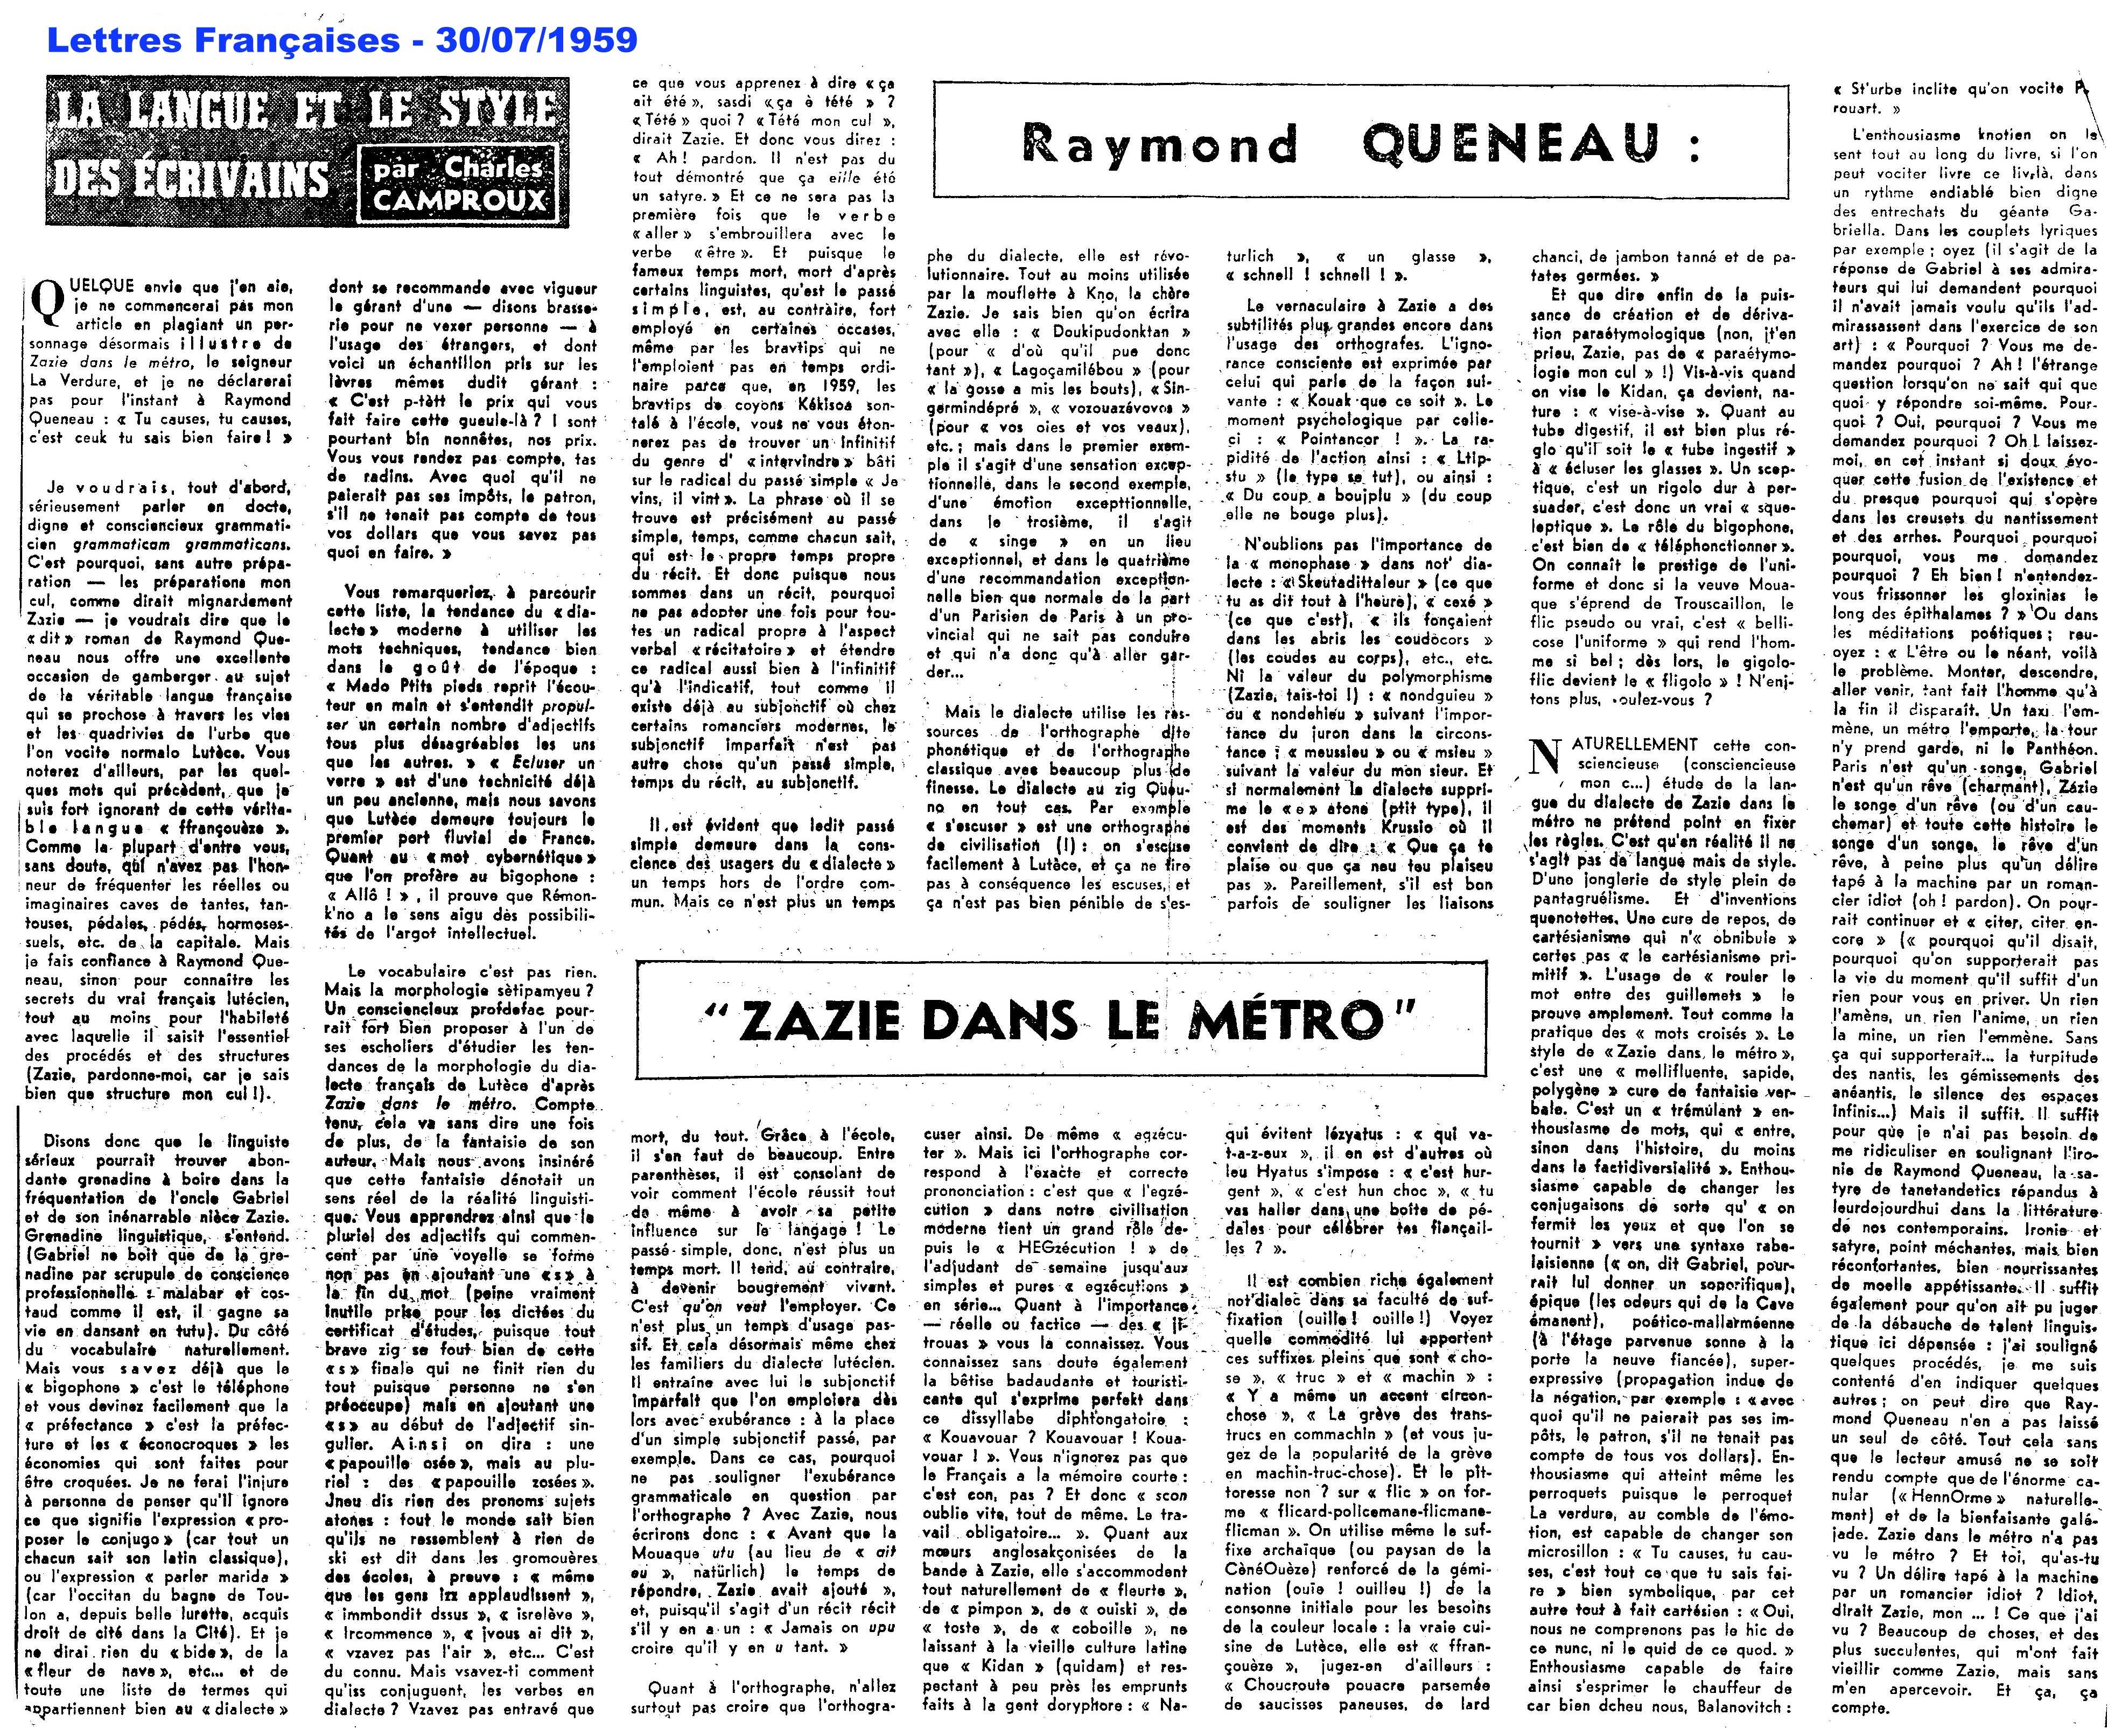 Lettres Françaises - 30 juillet 1959